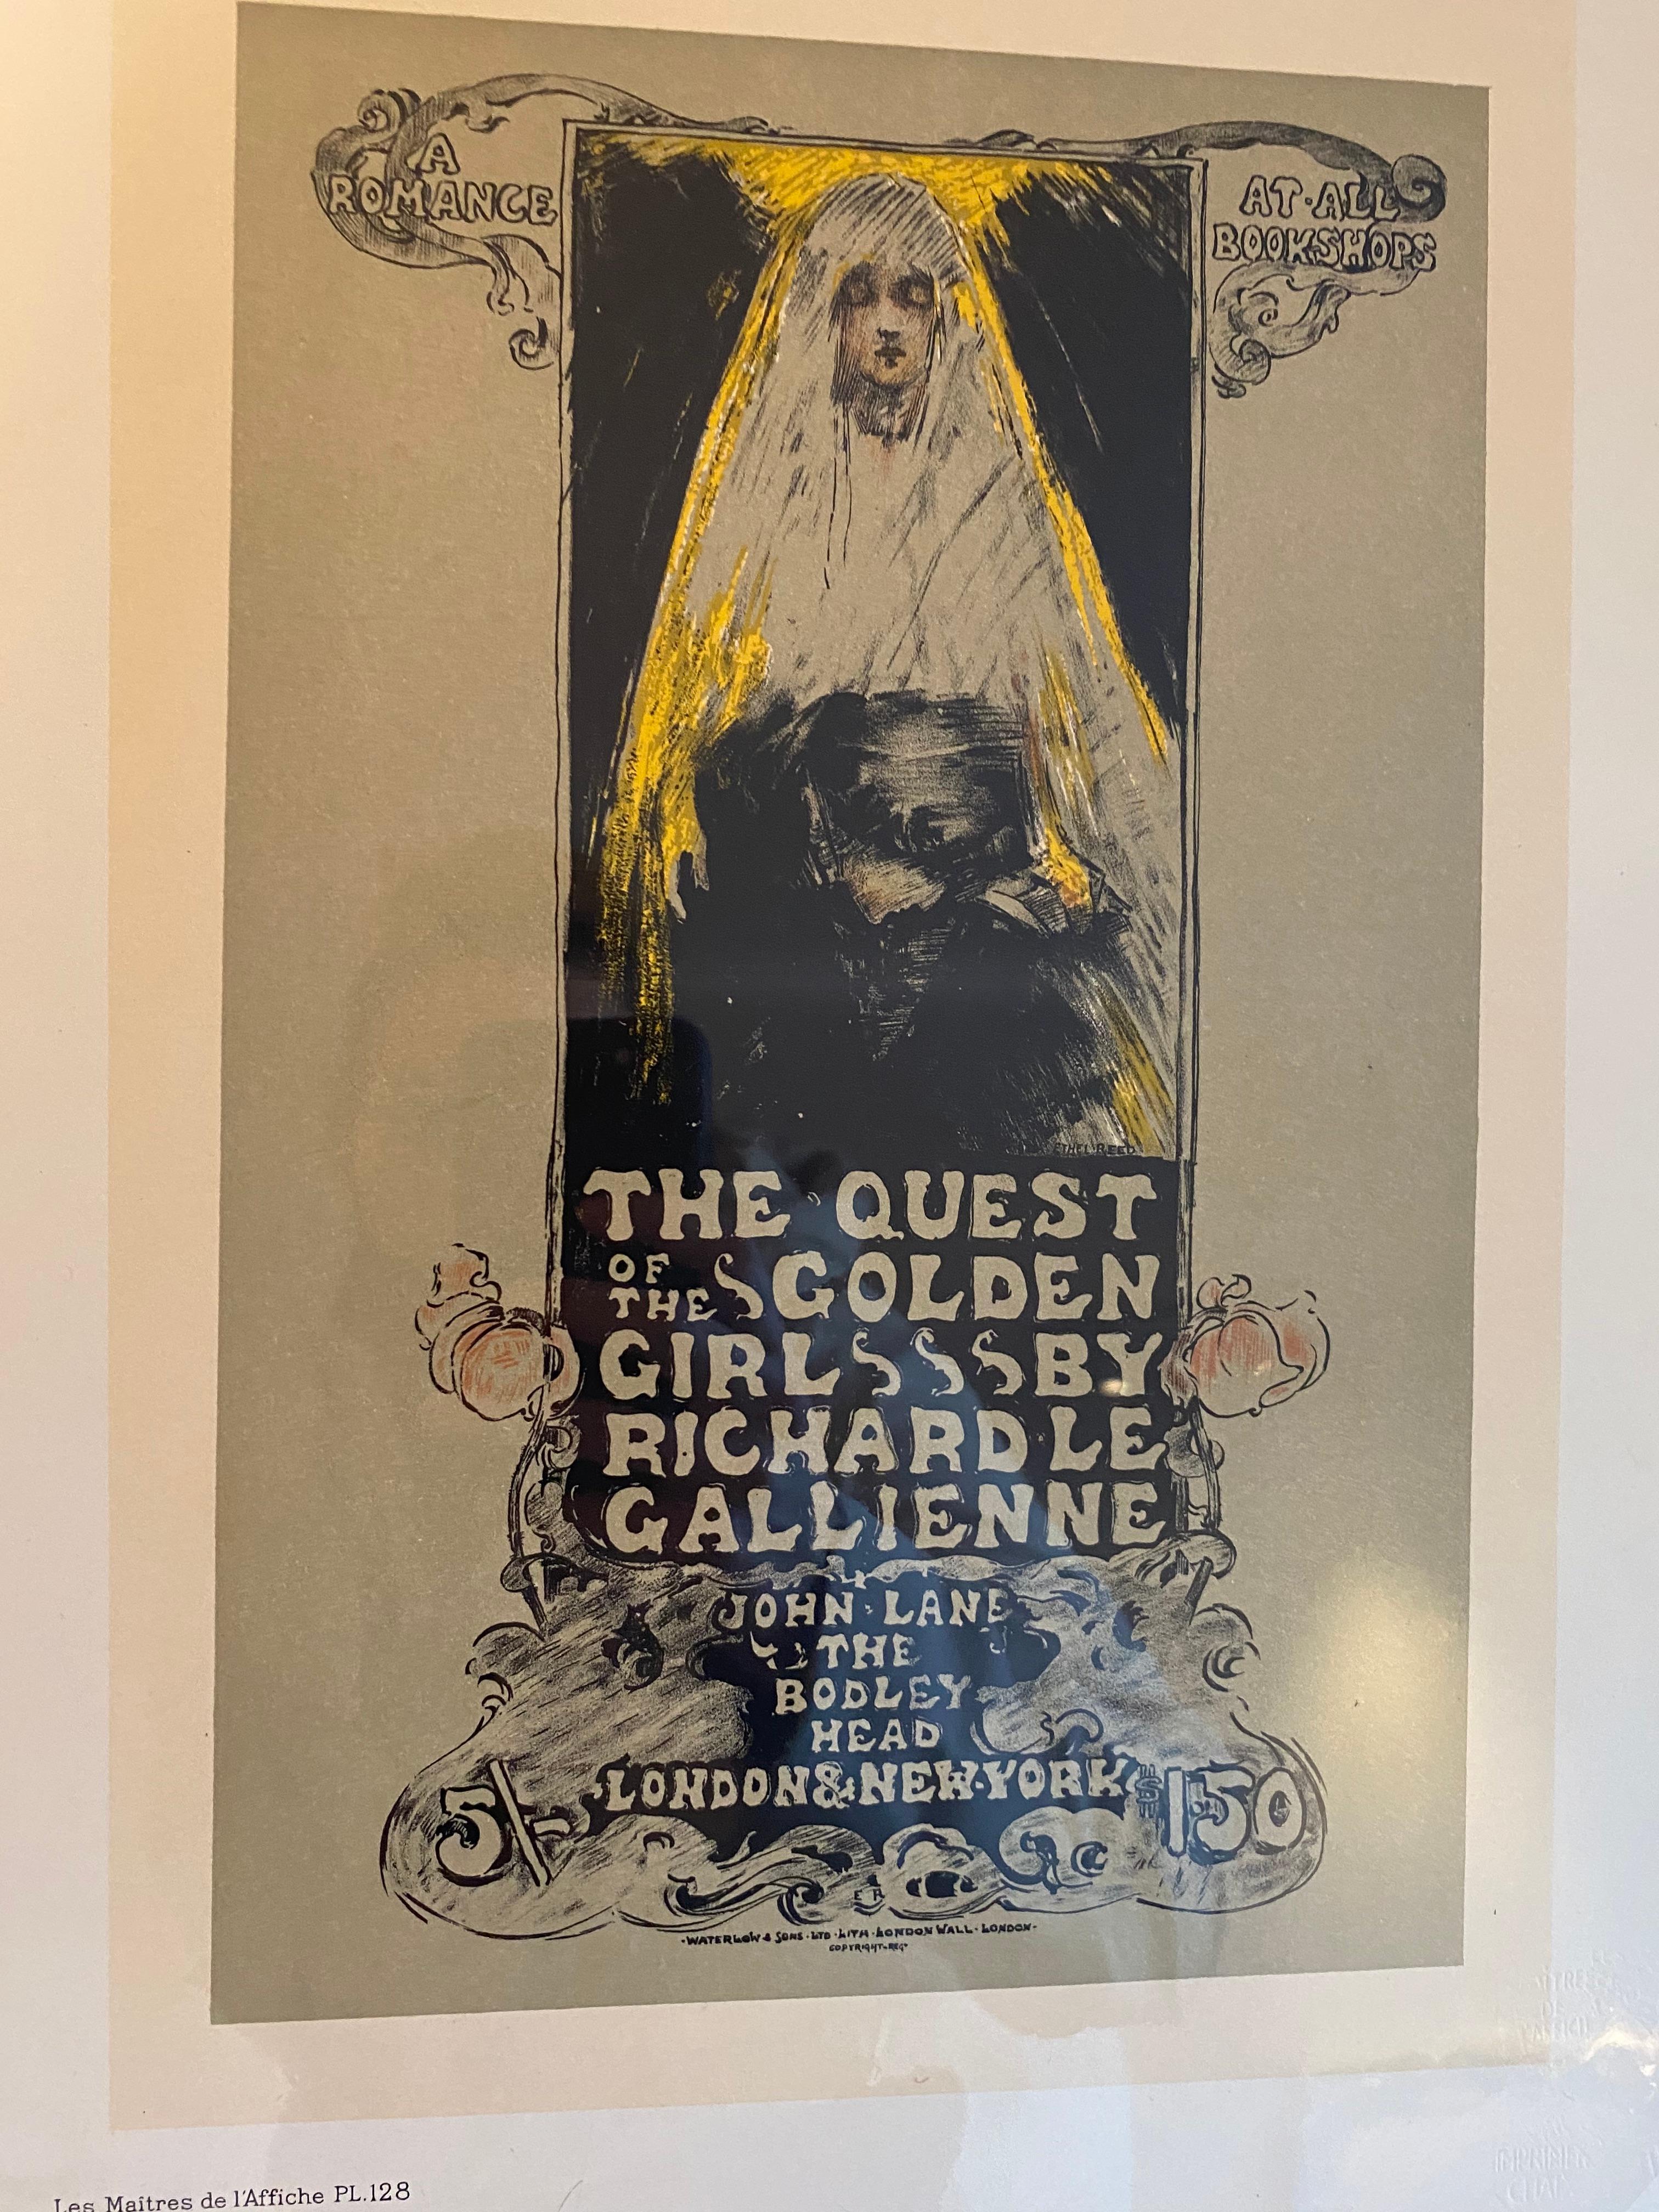 "Quest of the Golden Girl" from Les Maitres de l'Affiche